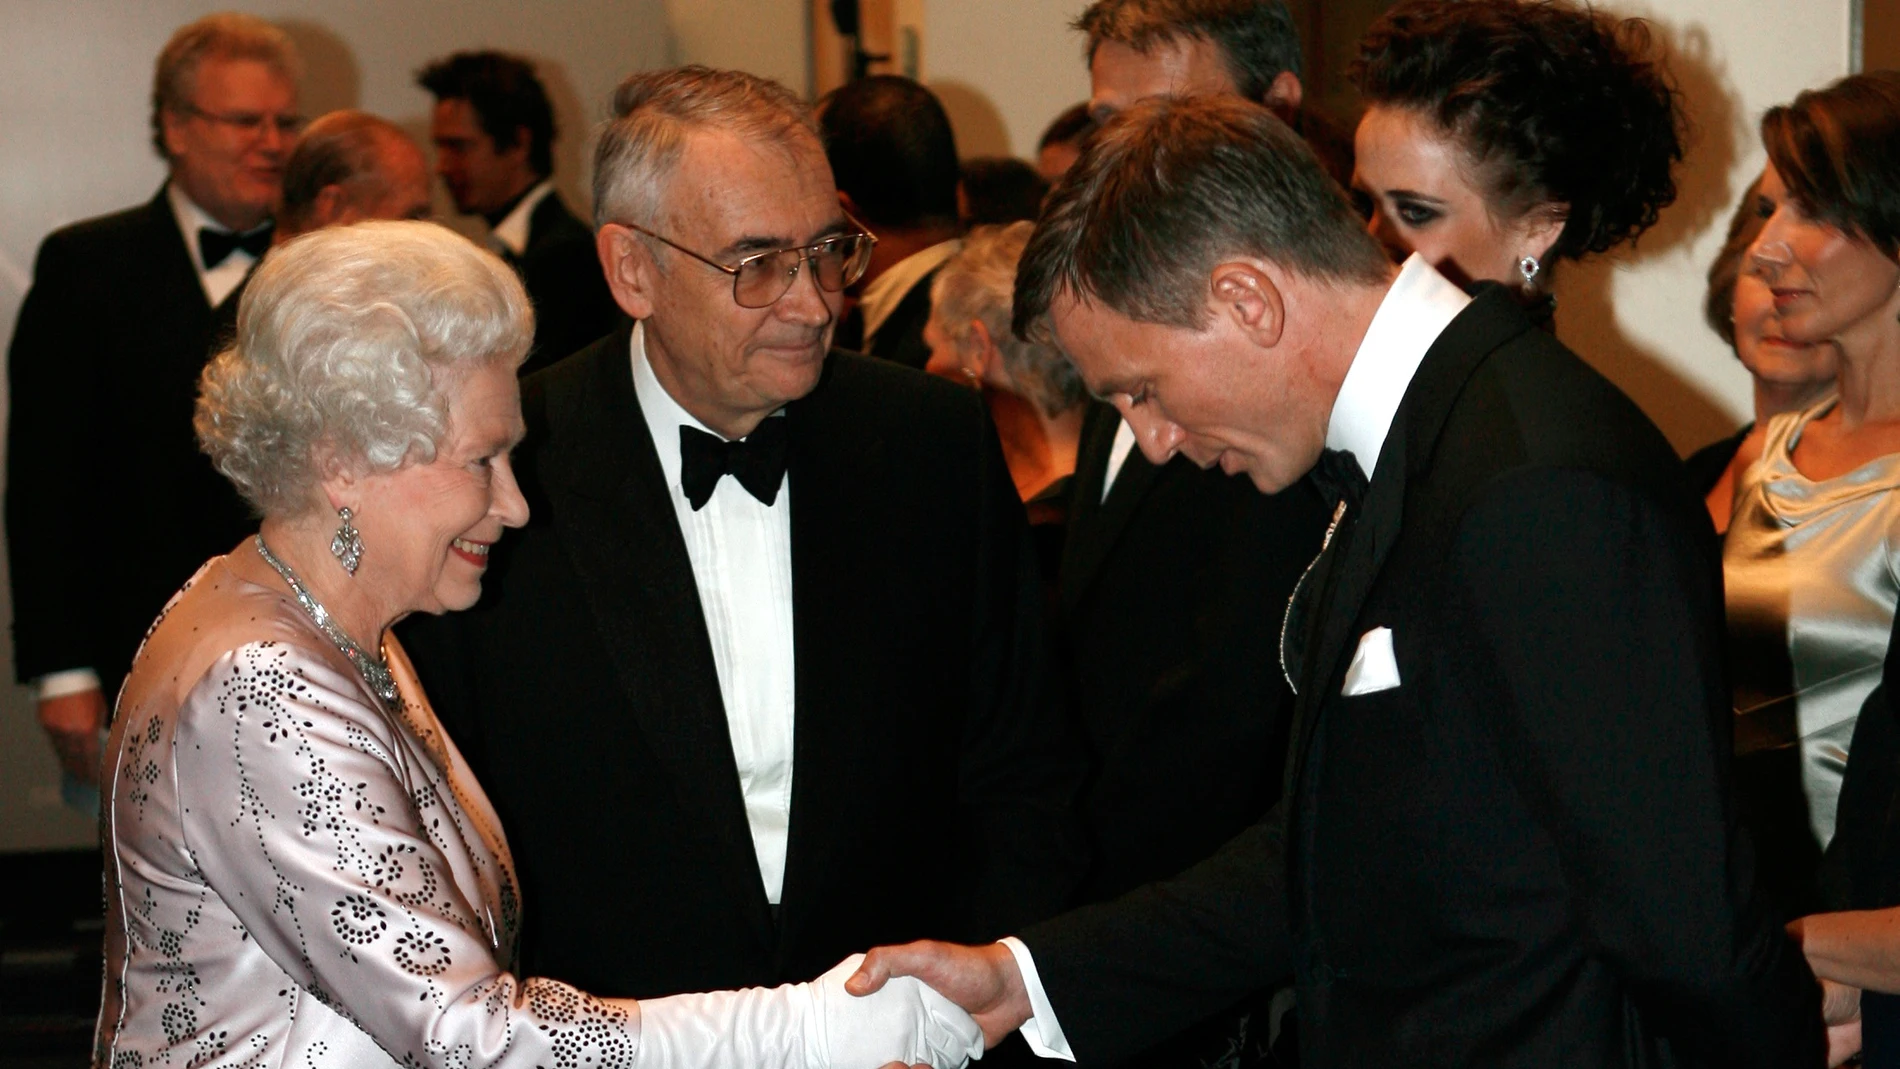 Isabel II con Daniel Craig en 2006, antes de protagonizar juntos un momento inolvidable en los Juegos Olímpicos